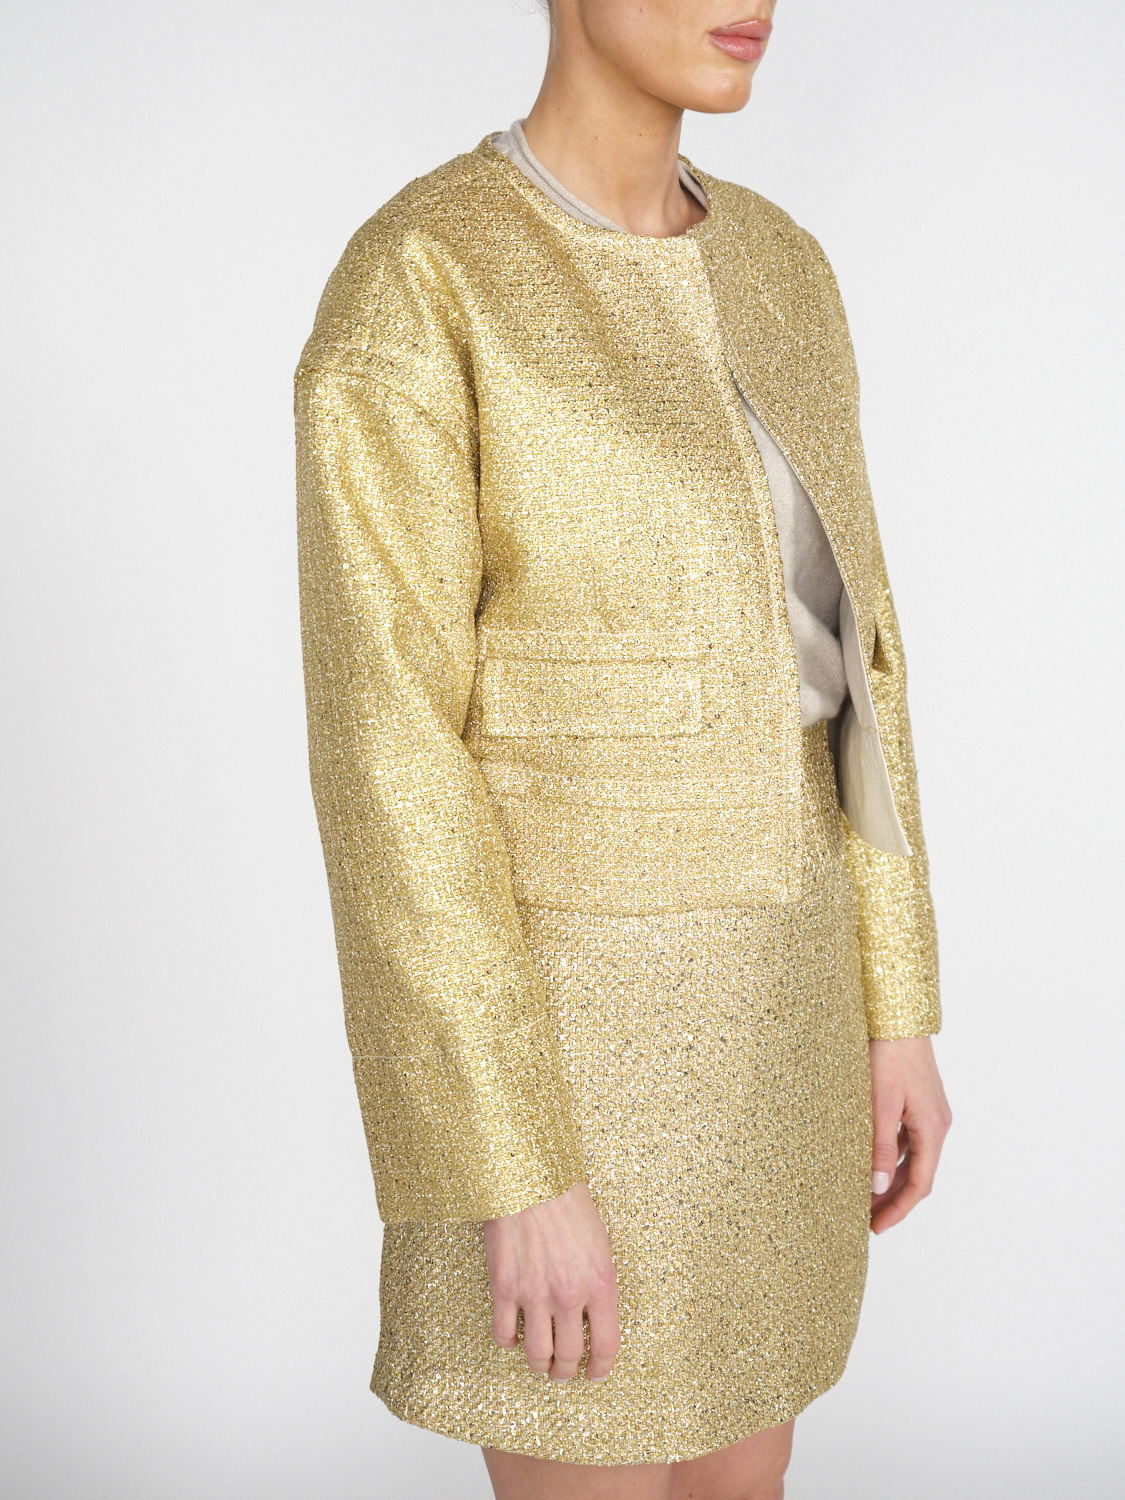 Odeeh Gold Brocade - Brocade blazer with lurex details  gold 34